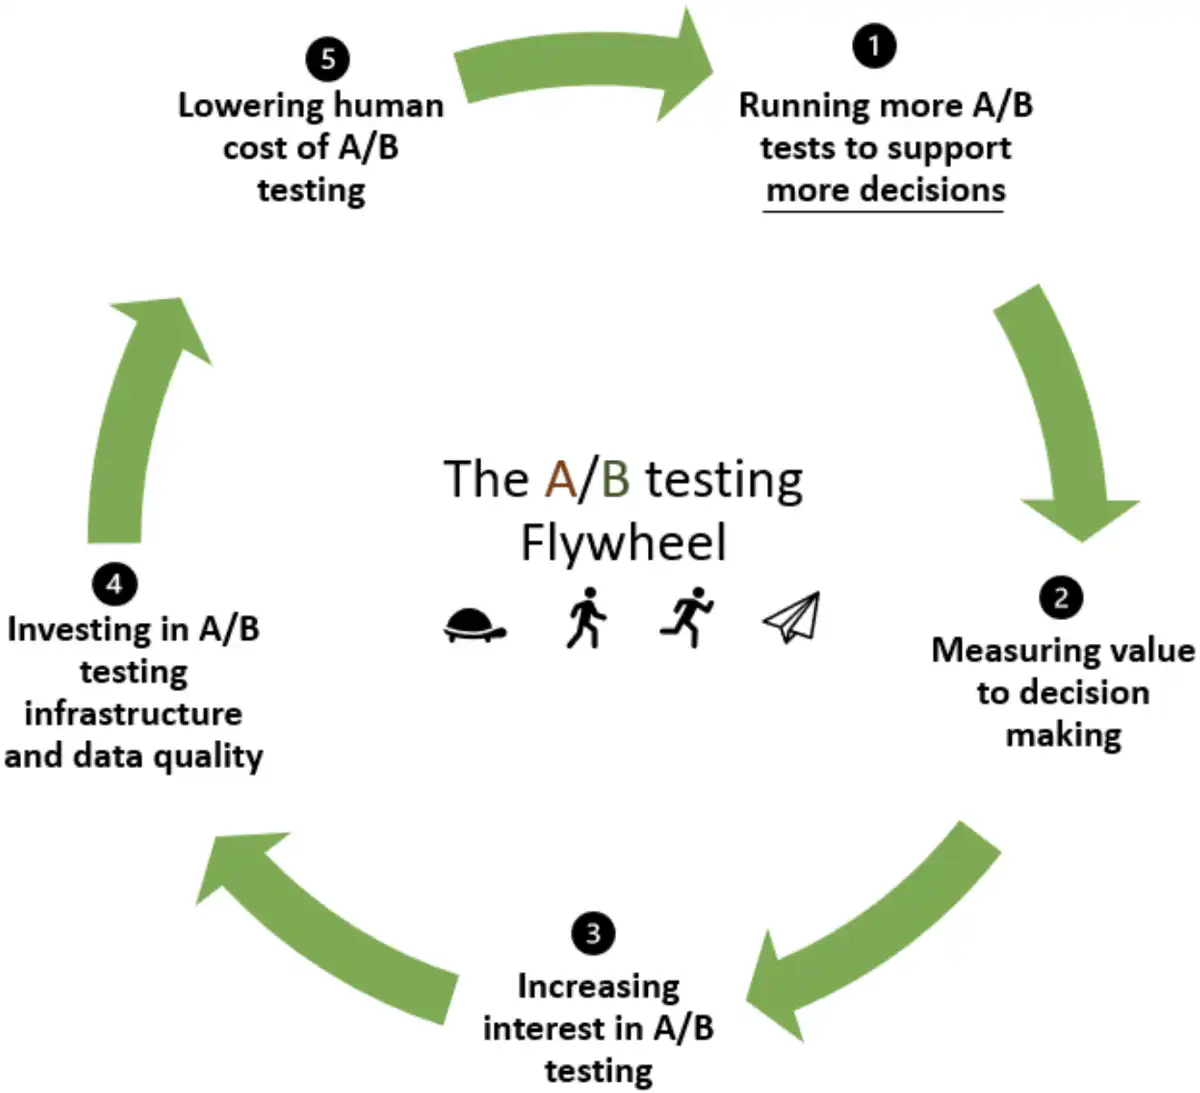 The A/B testing flywheel model